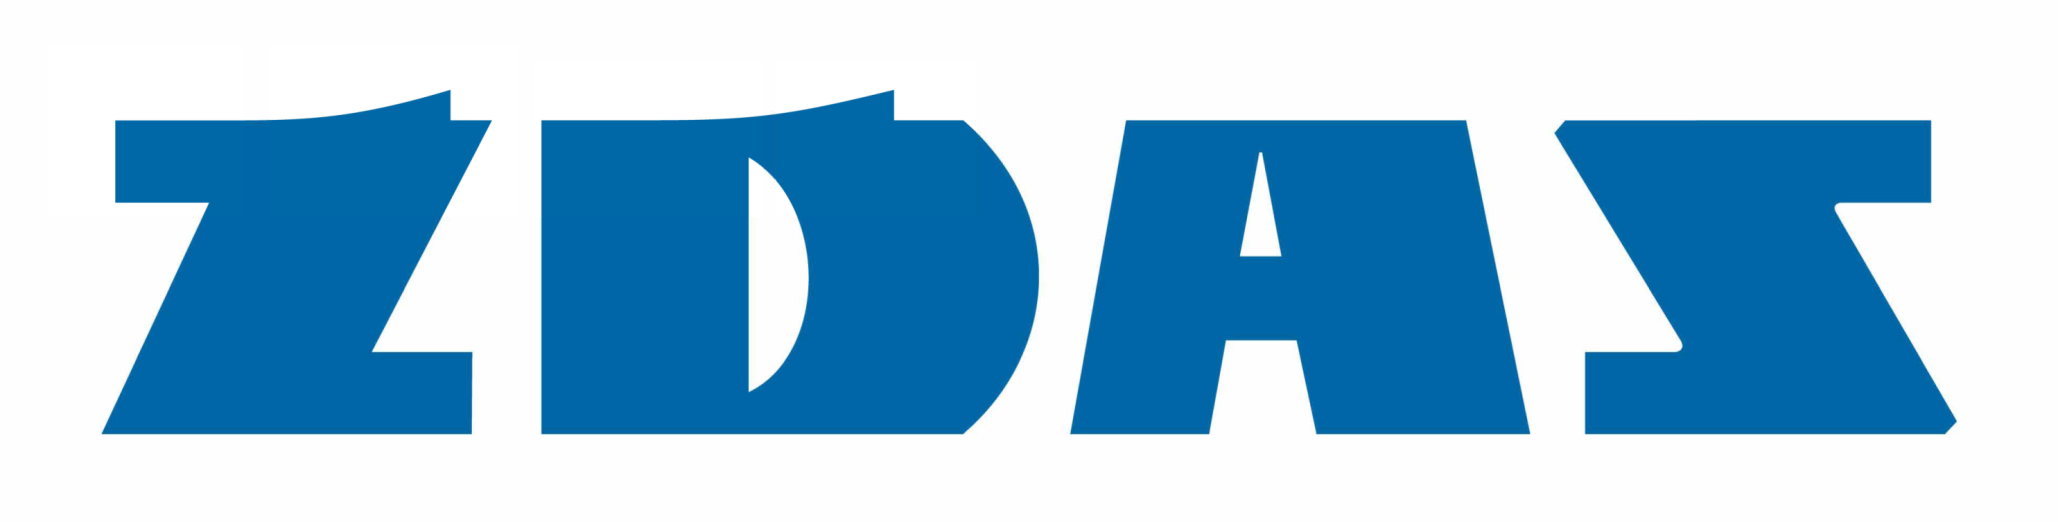 ŽĎAS - Základní logotyp - logo modré